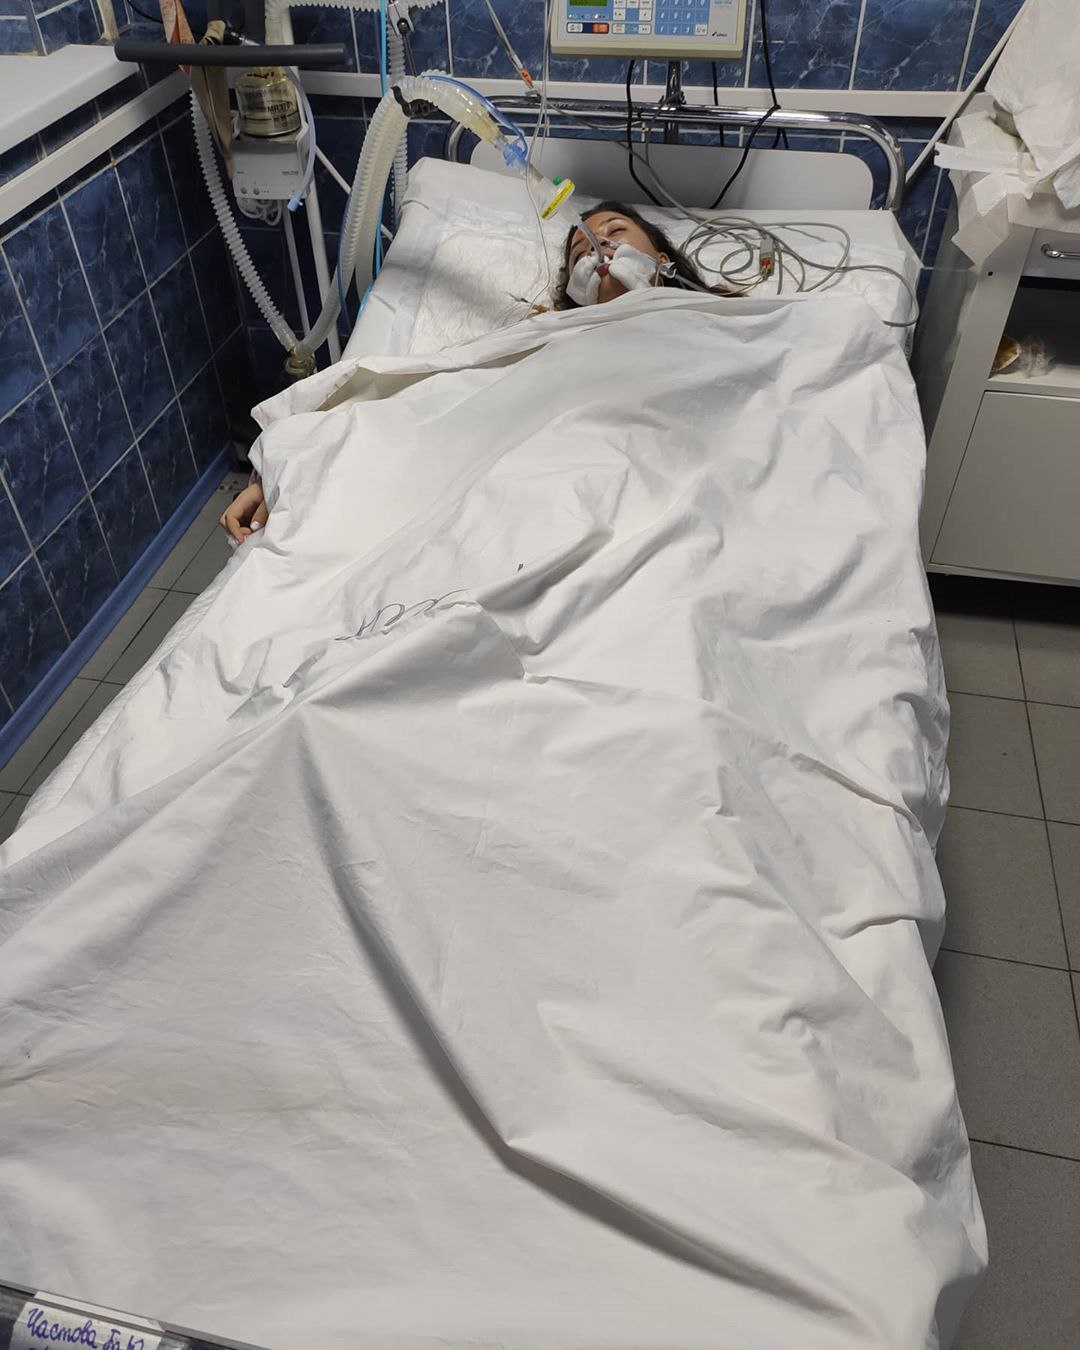 Не вышла из комы: в Запорожье скончалась 17-летняя девушка, пострадавшая в ДТП (ФОТО)